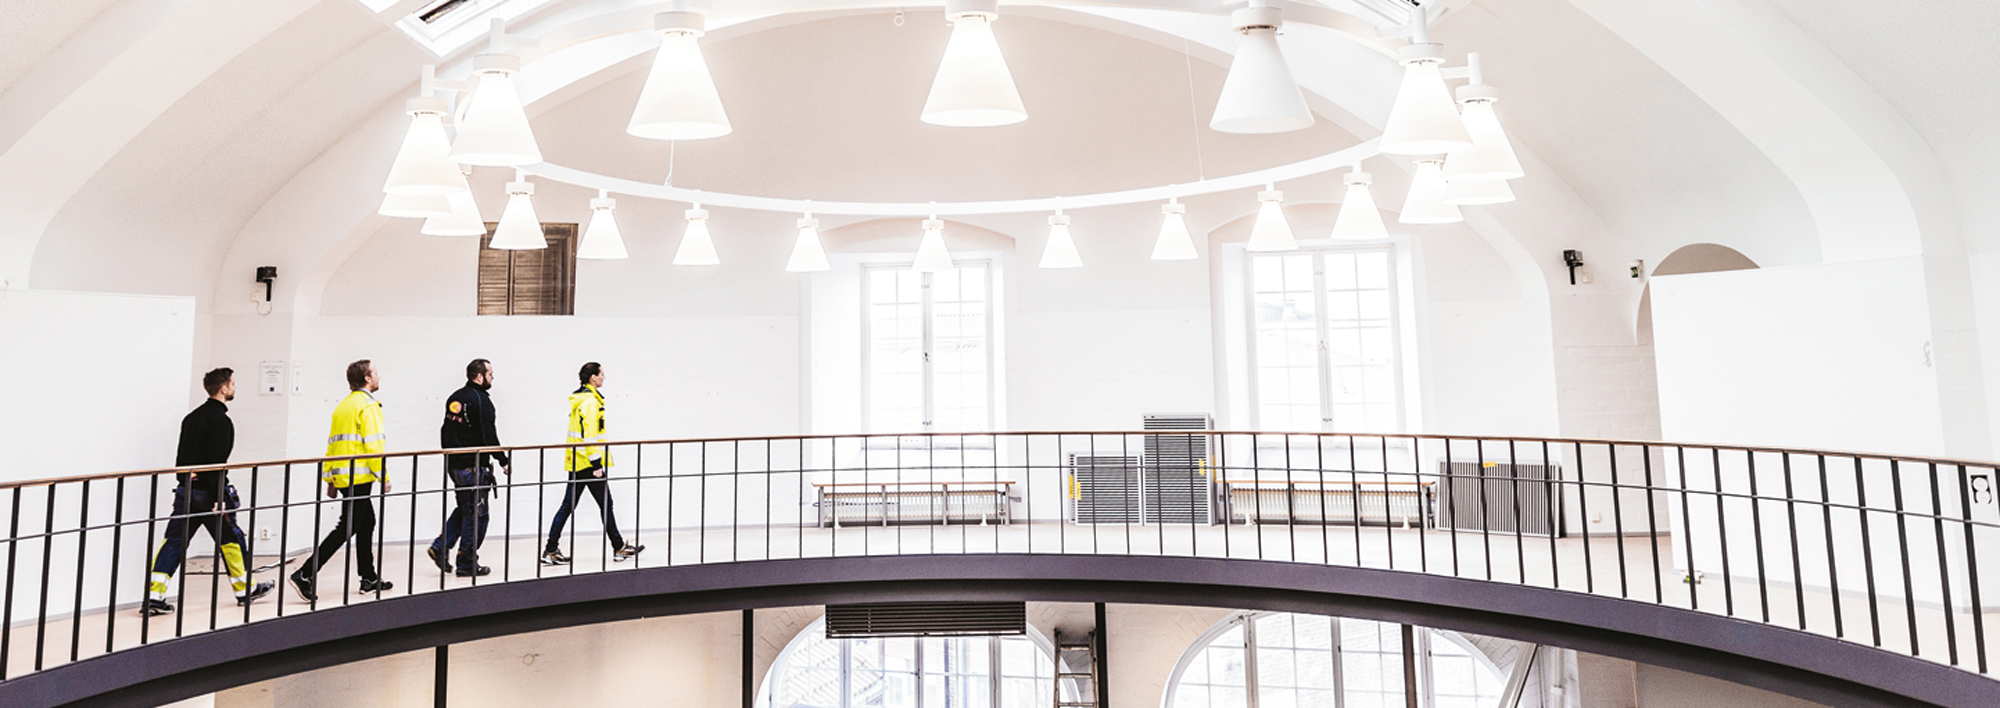 Bättre belysning, ökat utrymme för studier och sammankomster liksom förbättrad akustik och genomtänkt ventilation var några av önskemålen som Kungliga Tekniska Högskolans bibliotek hade.